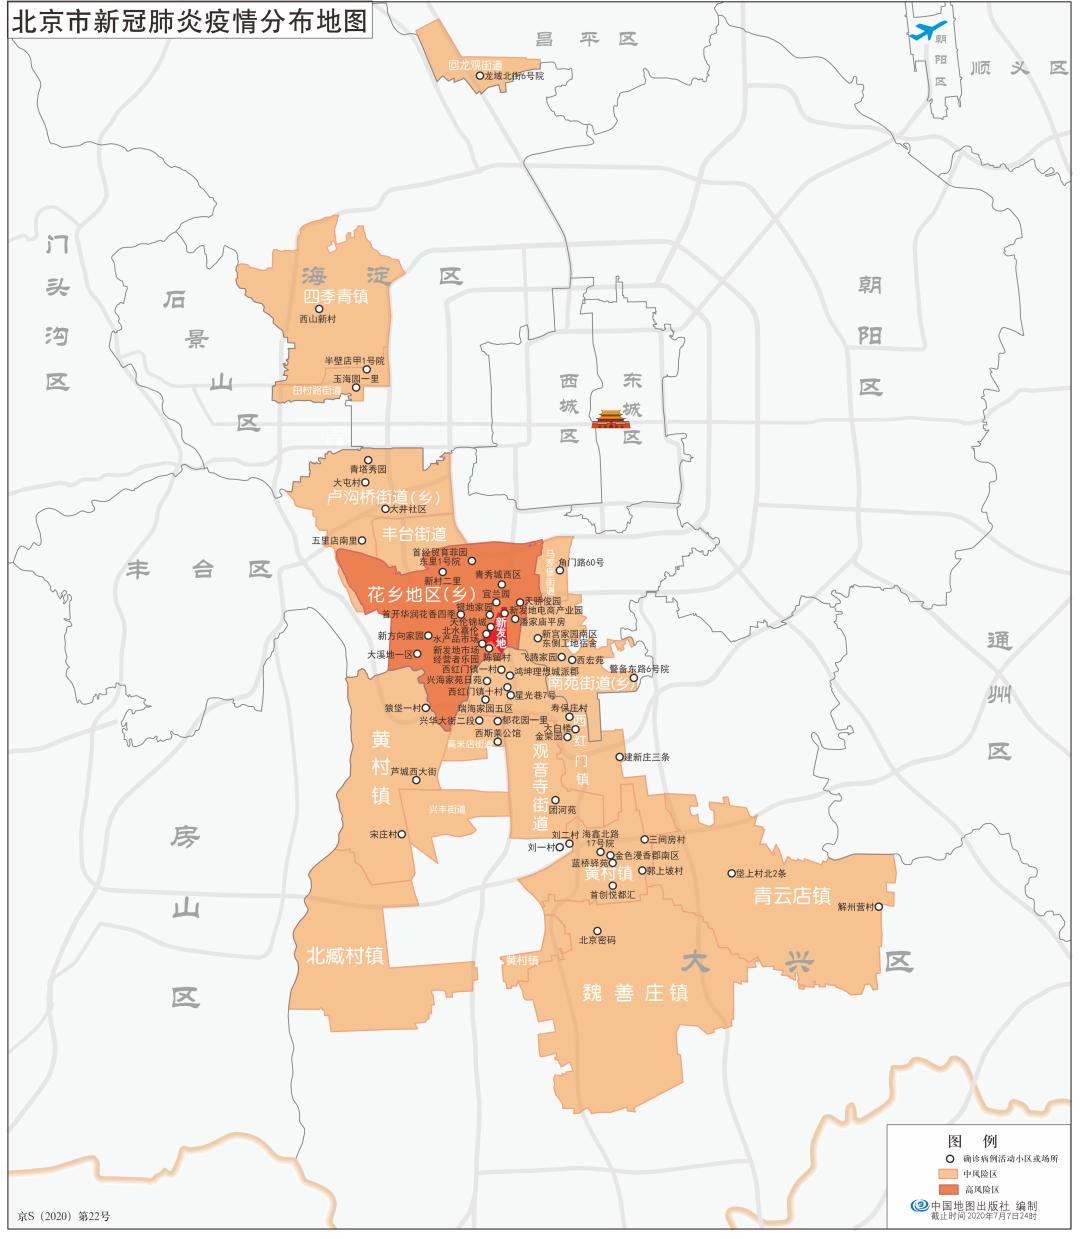 清零了北京市新冠肺炎疫情分布地图回顾北京第二轮疫情